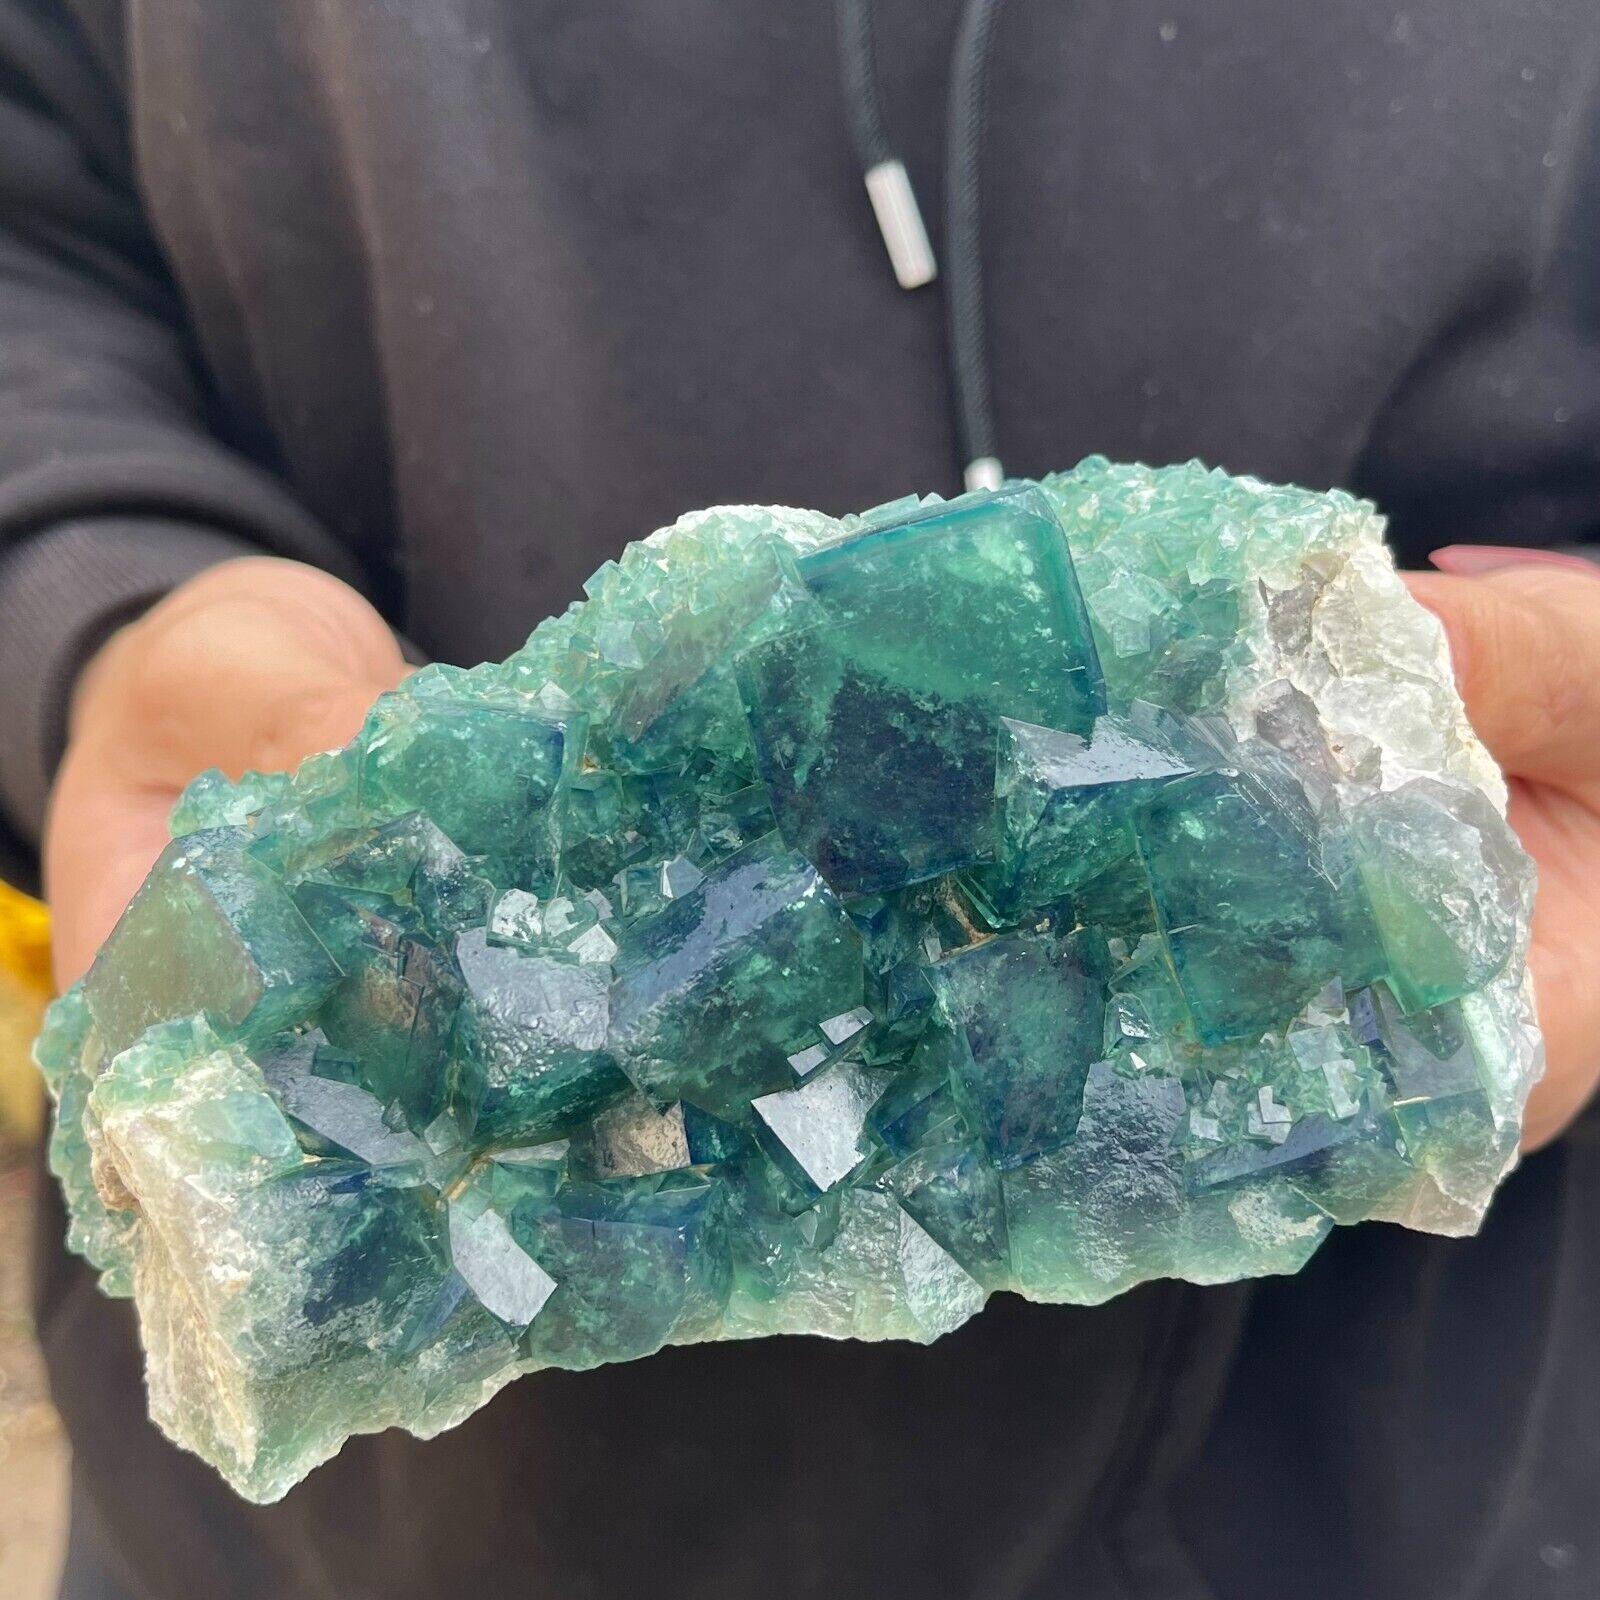 2.7lb Large NATURAL Green Cube FLUORITE Quartz Crystal Cluster Mineral Specimen